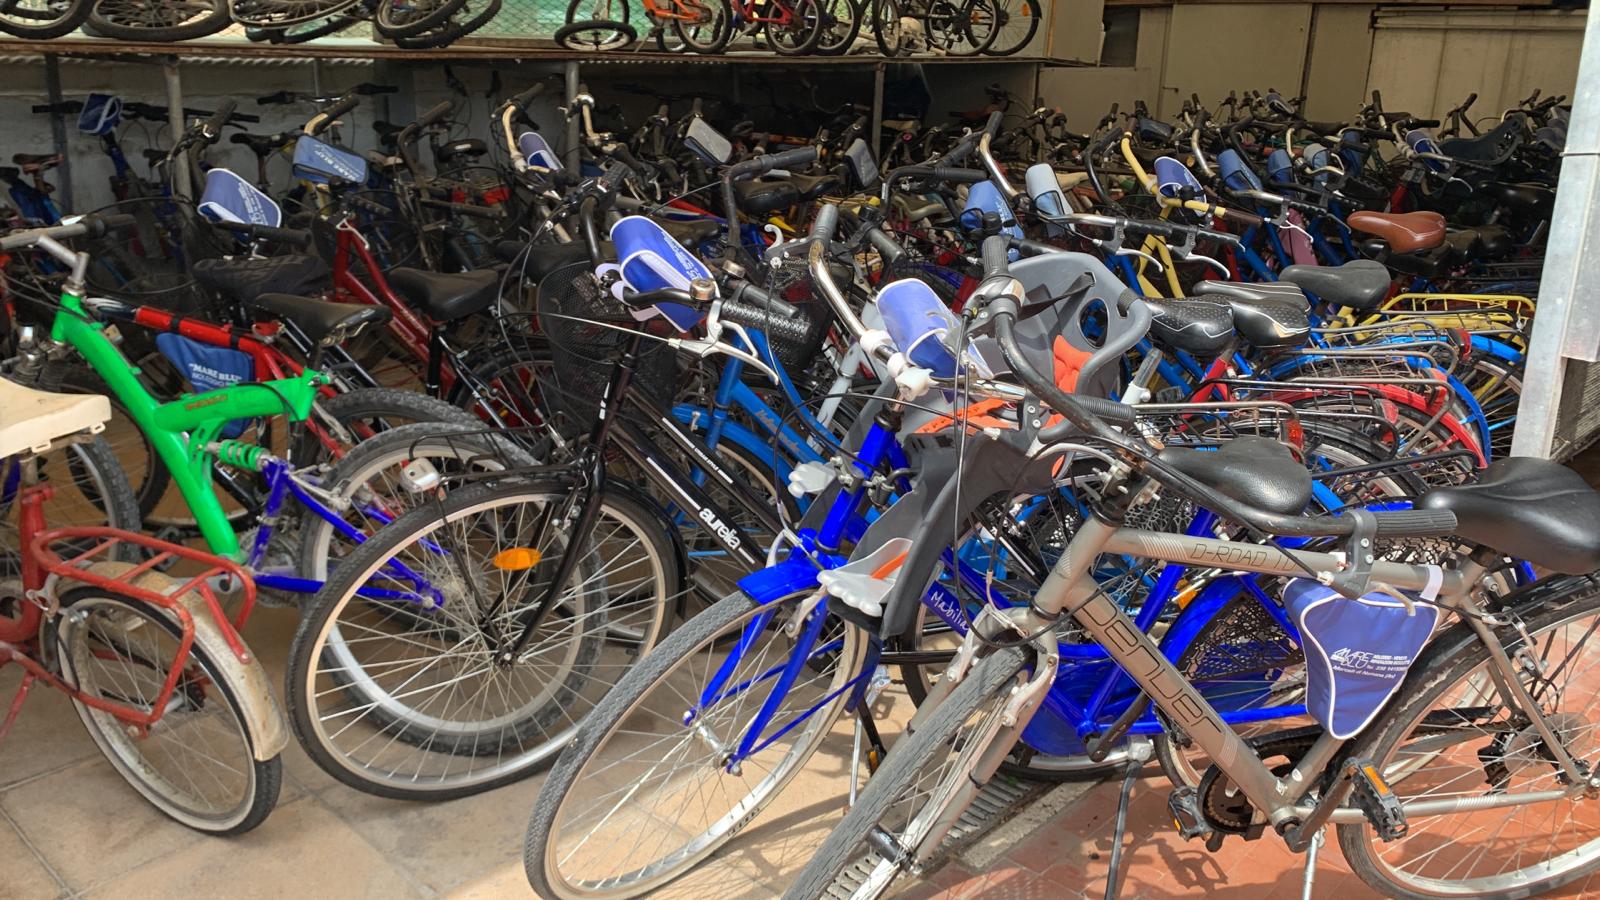 Mare blu bike Conero - Noleggio, vendita e assistenza bici, ebike e pedalata assistita 1